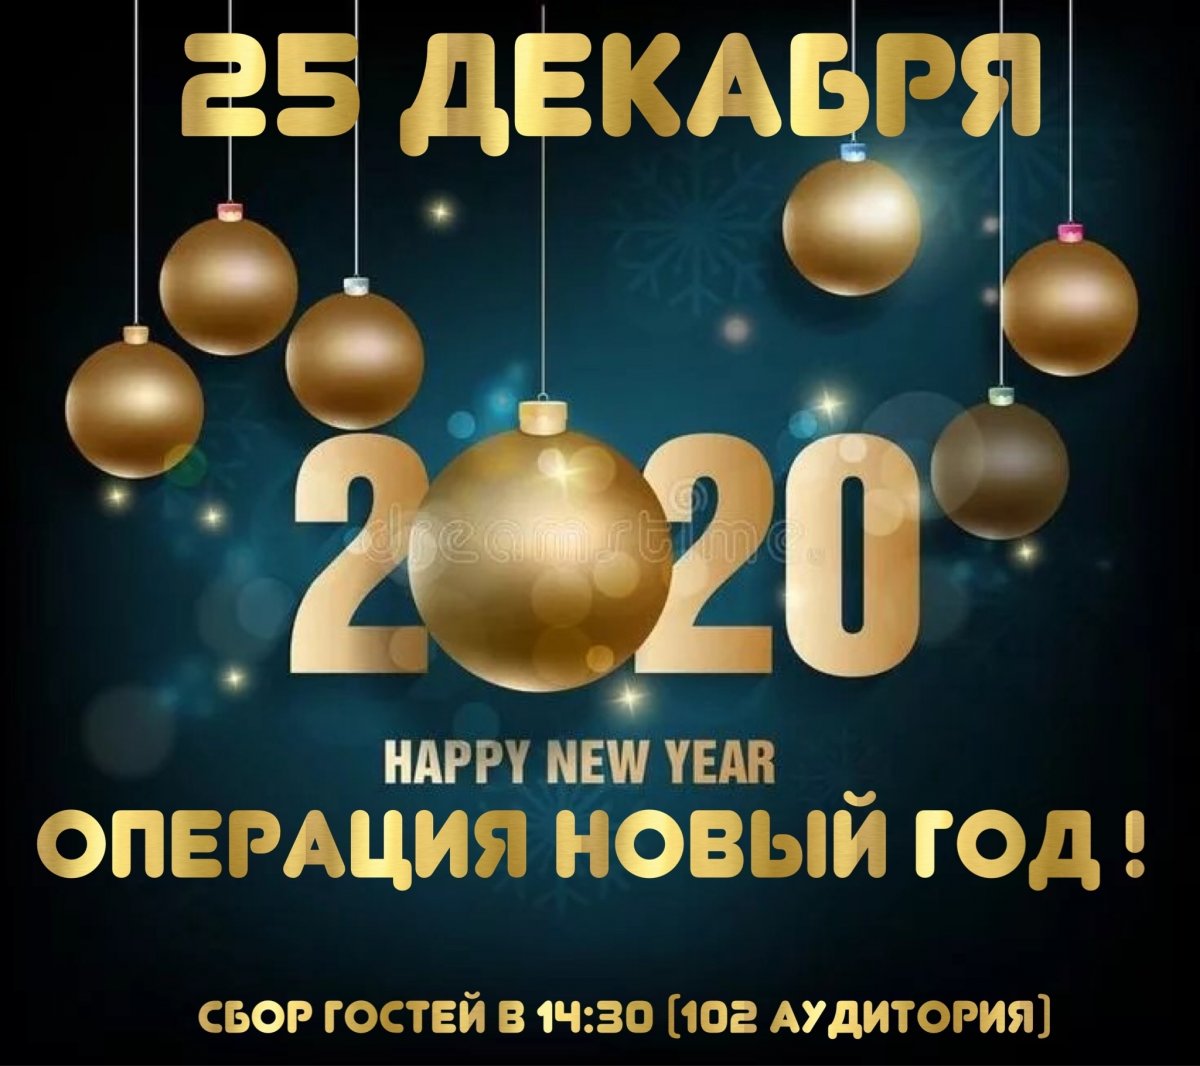 Друзья, совсем скоро наступит Новый 2020 год.🎄 Ну, а чтобы он прошёл весело, ярко, удачно и очень драйвово, нужно как следует, повеселиться! 💃🕺